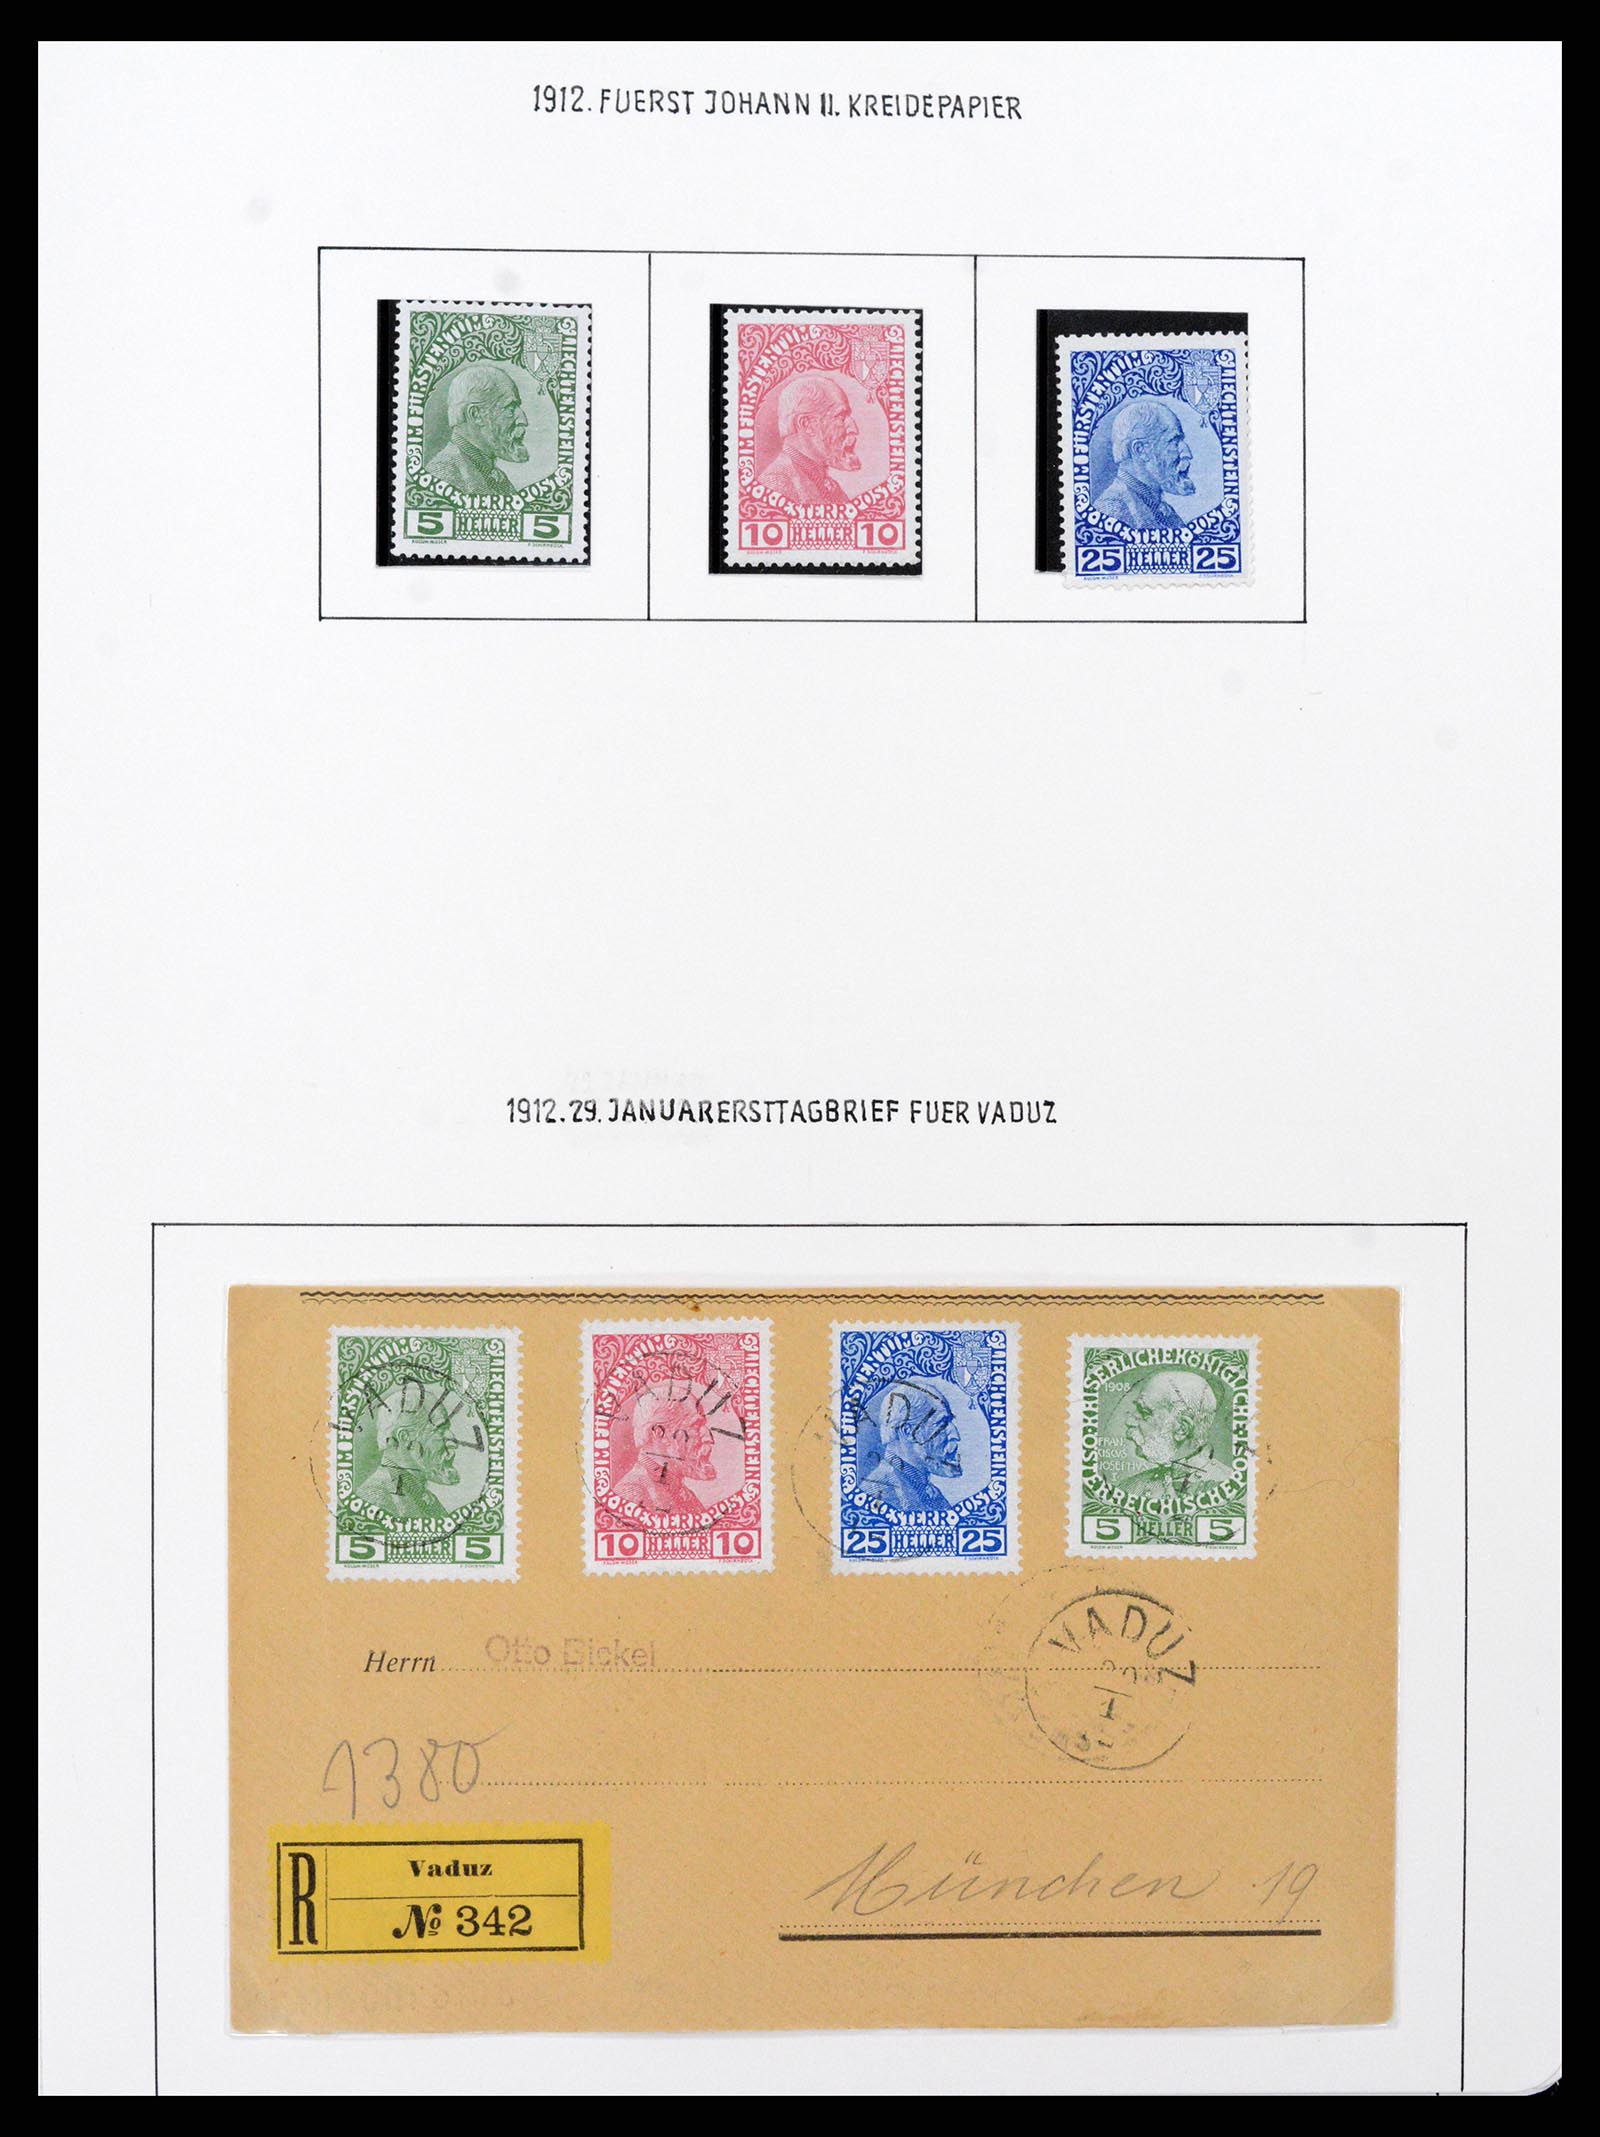 37150 0002 - Stamp collection 37150 Liechtenstein supercollection 1912-1962.